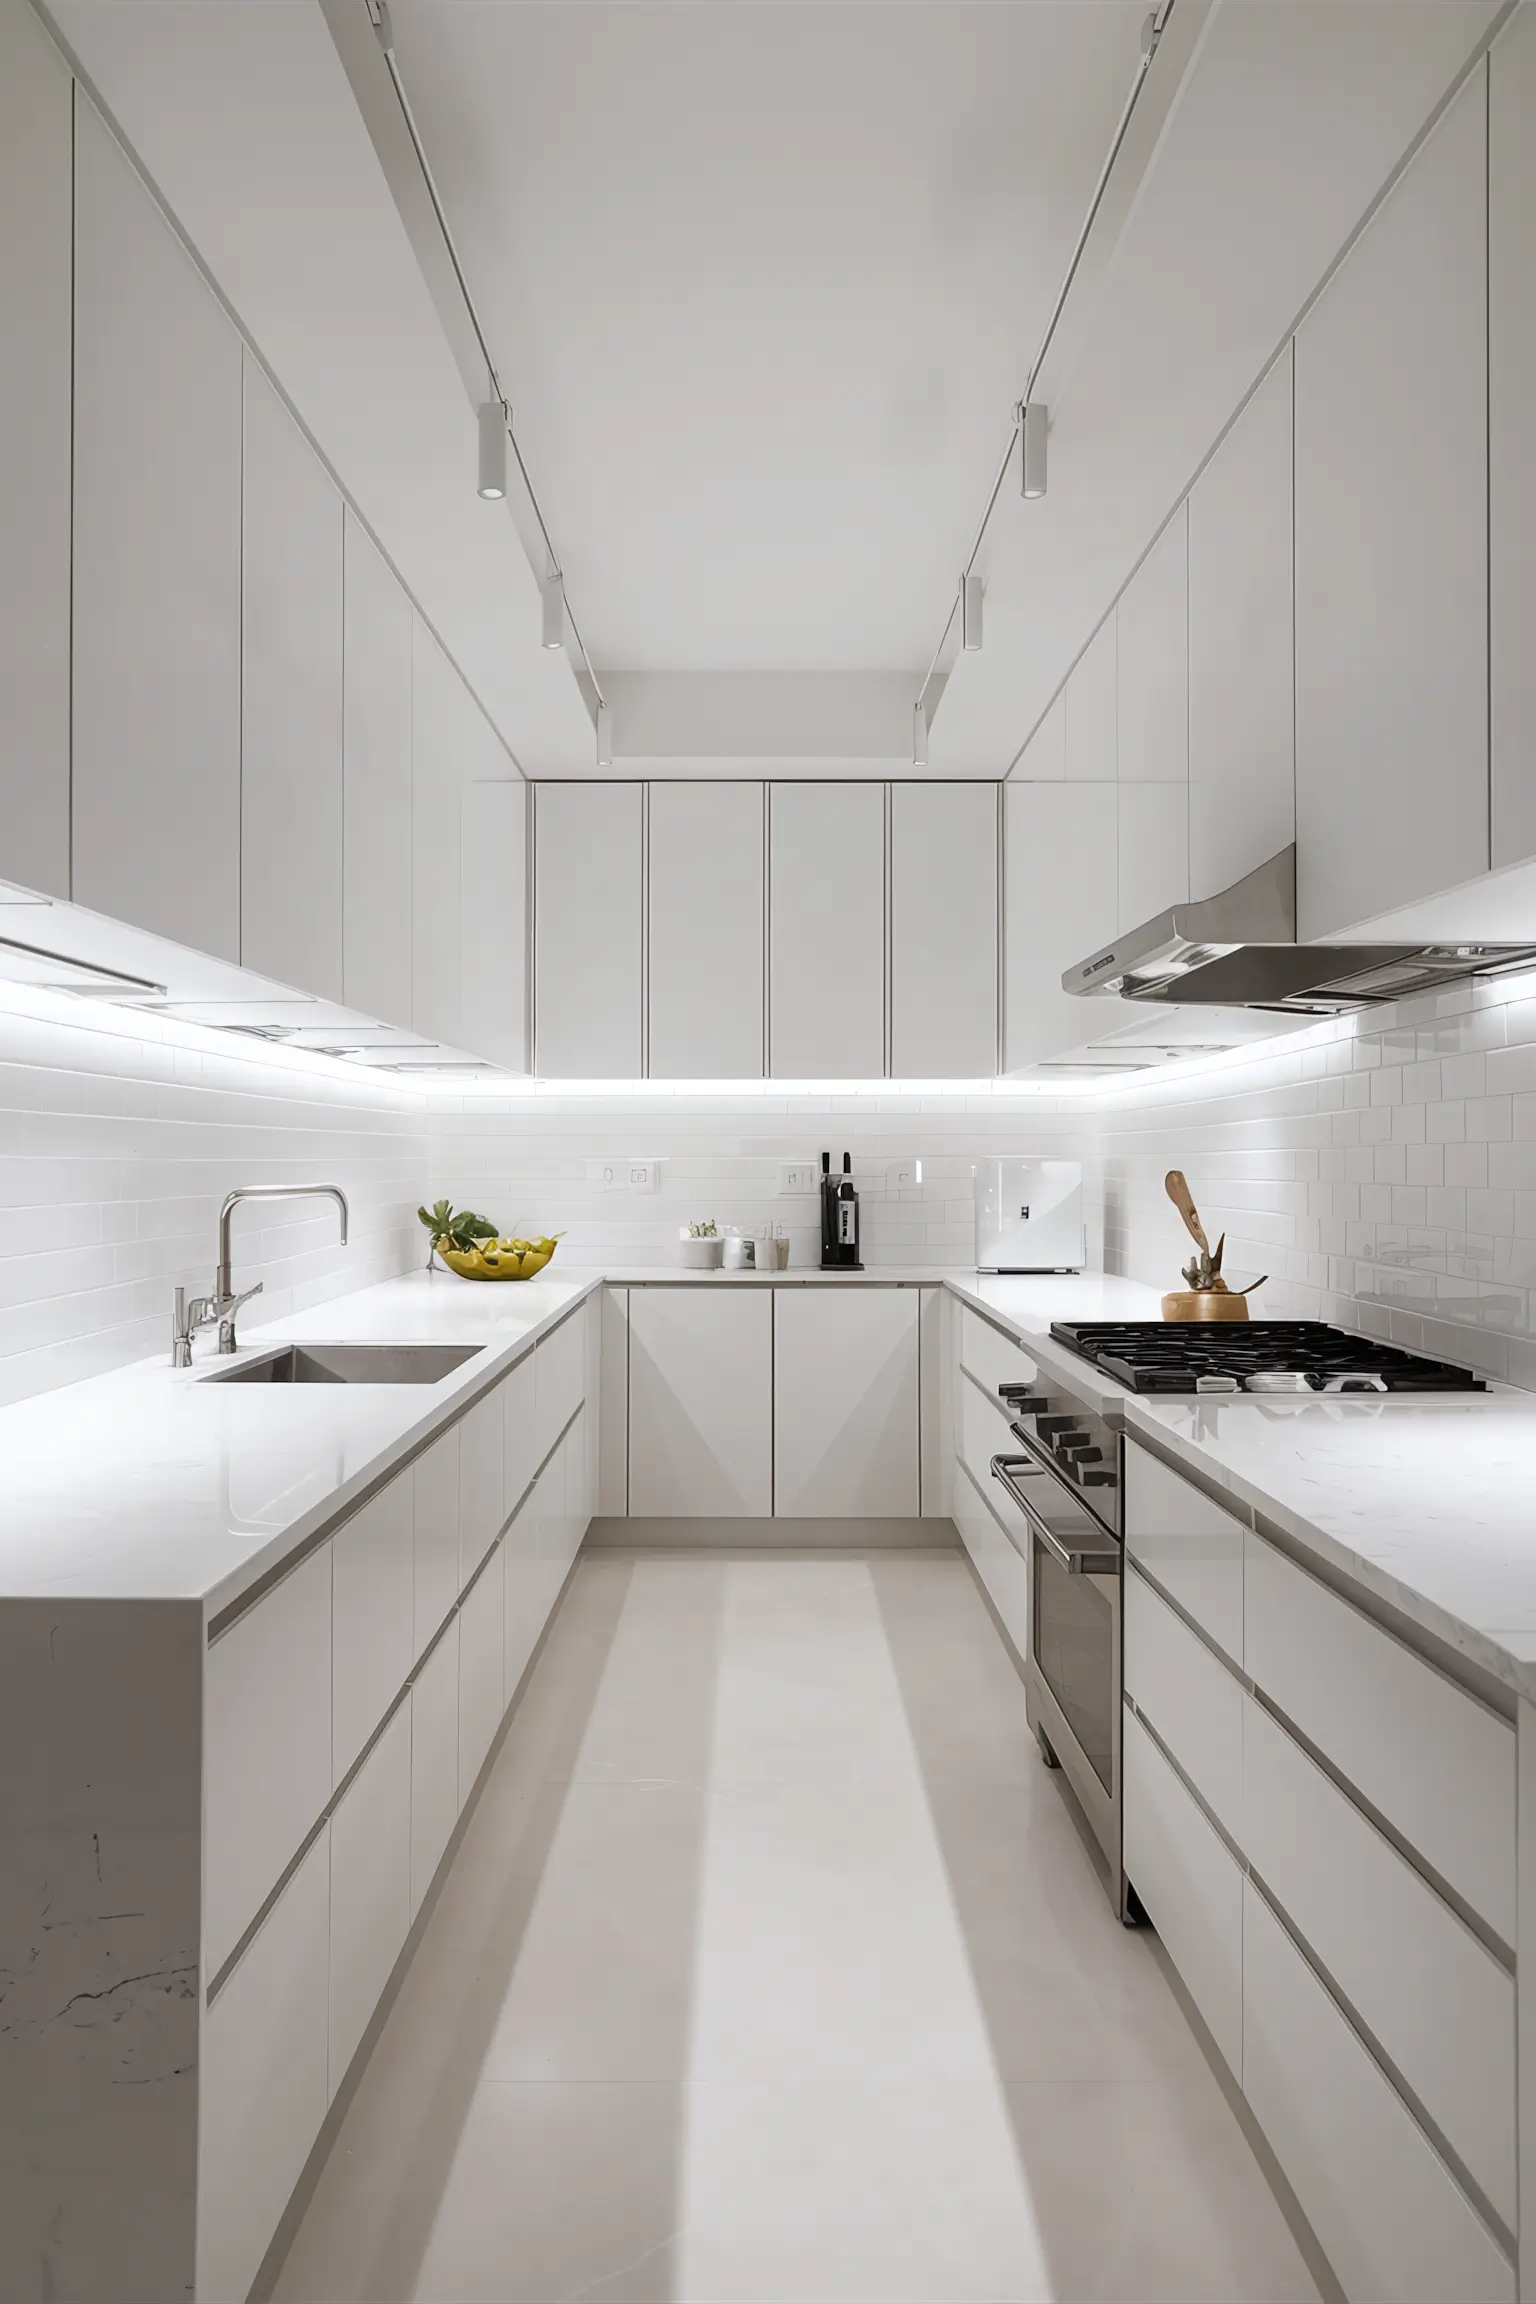 Minimalistic white kitchen with elegant white marble countertops.